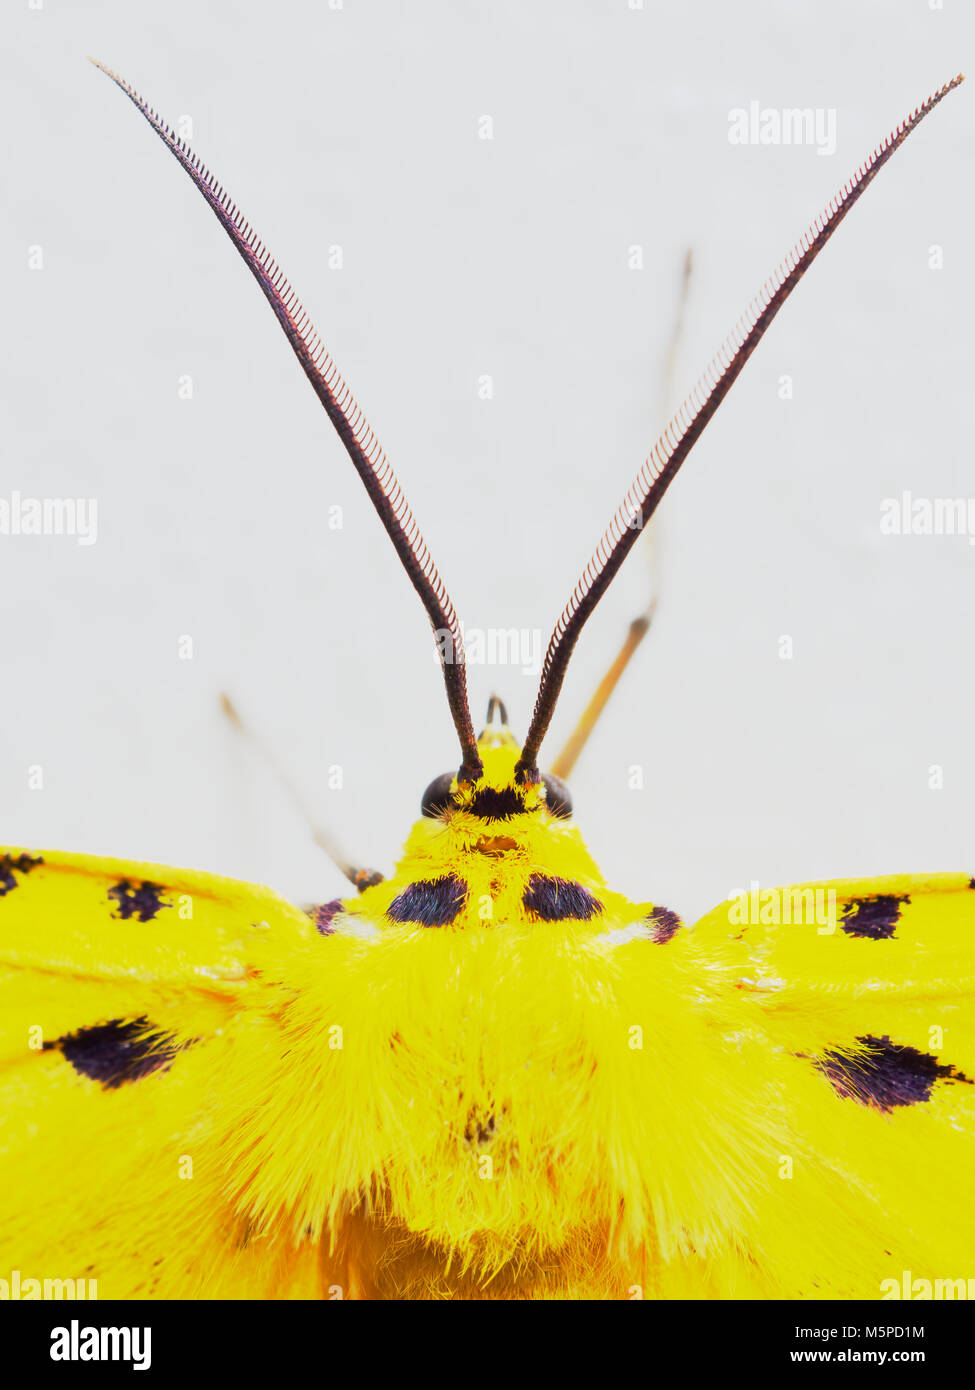 Giallo, nero e bianco moth in stretta fino alla testa, antenne, e torace isolati su sfondo bianco Foto Stock